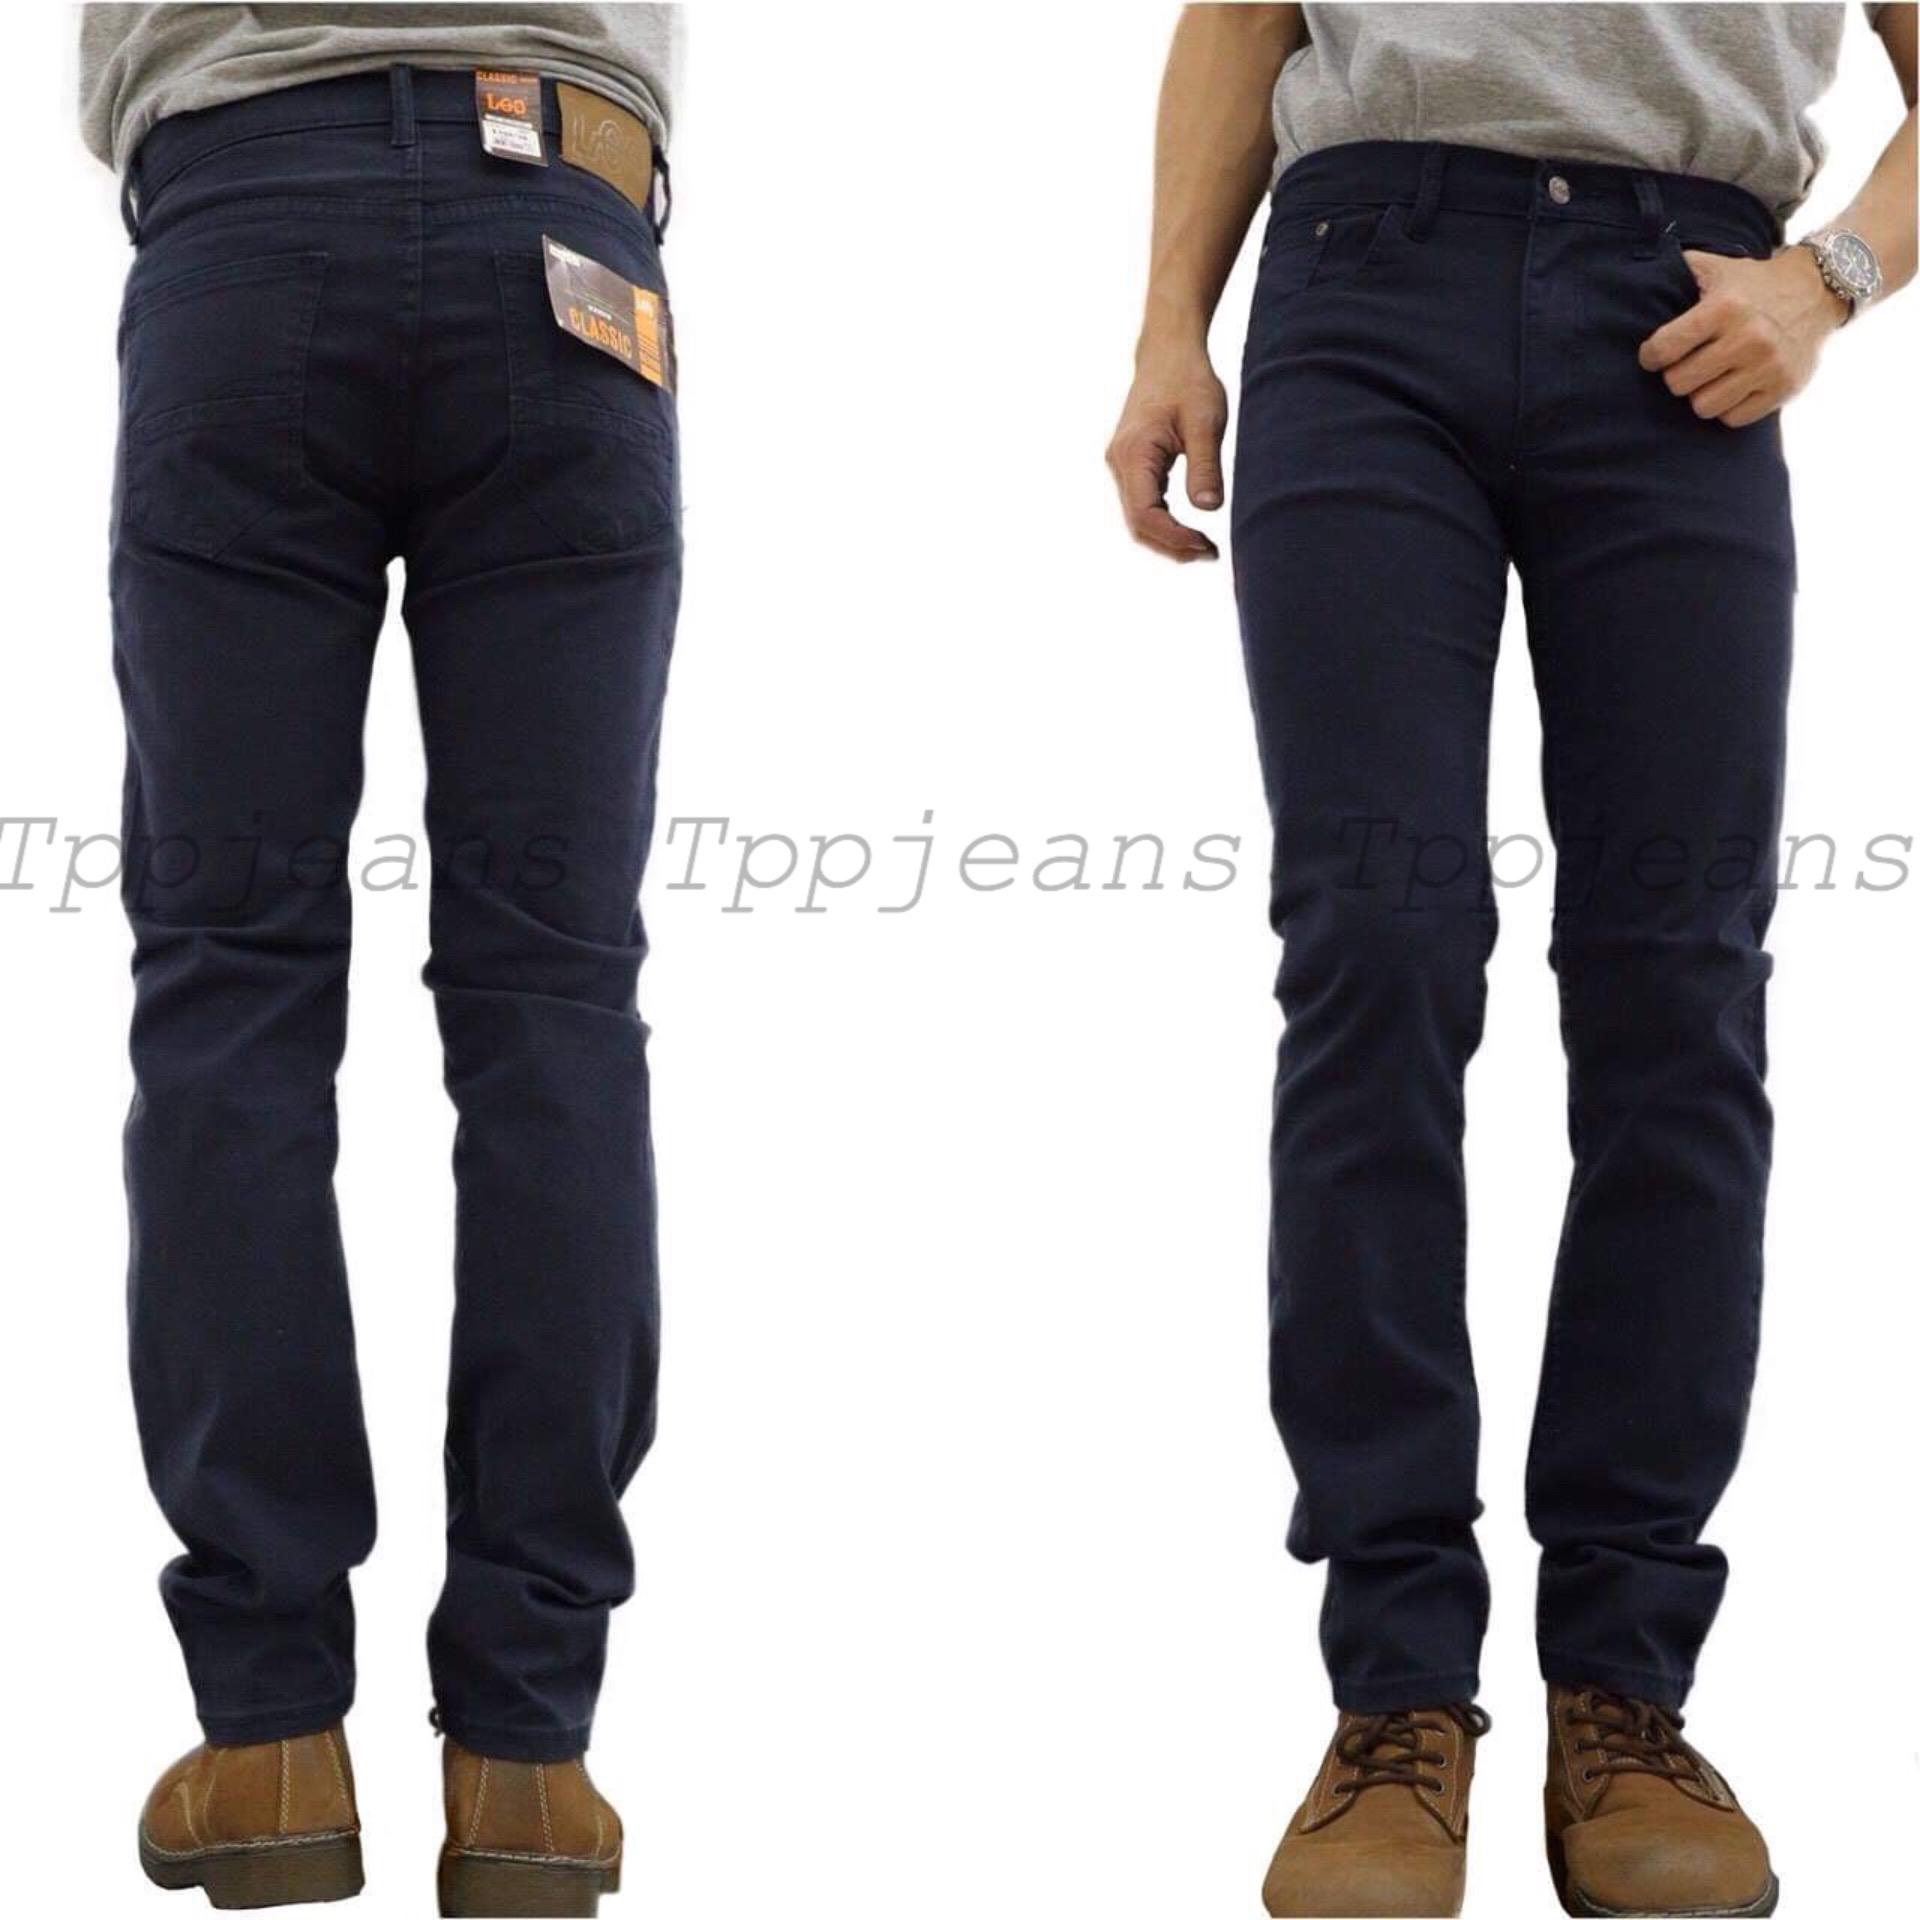 LEEกางเกงขายาวชาย ผ้าCottonJeans ทรงกระบอกเล็ก สีสุภาพ เป้าซิปสีไม่ตก มีไซส์ใหญ่ Size28-48